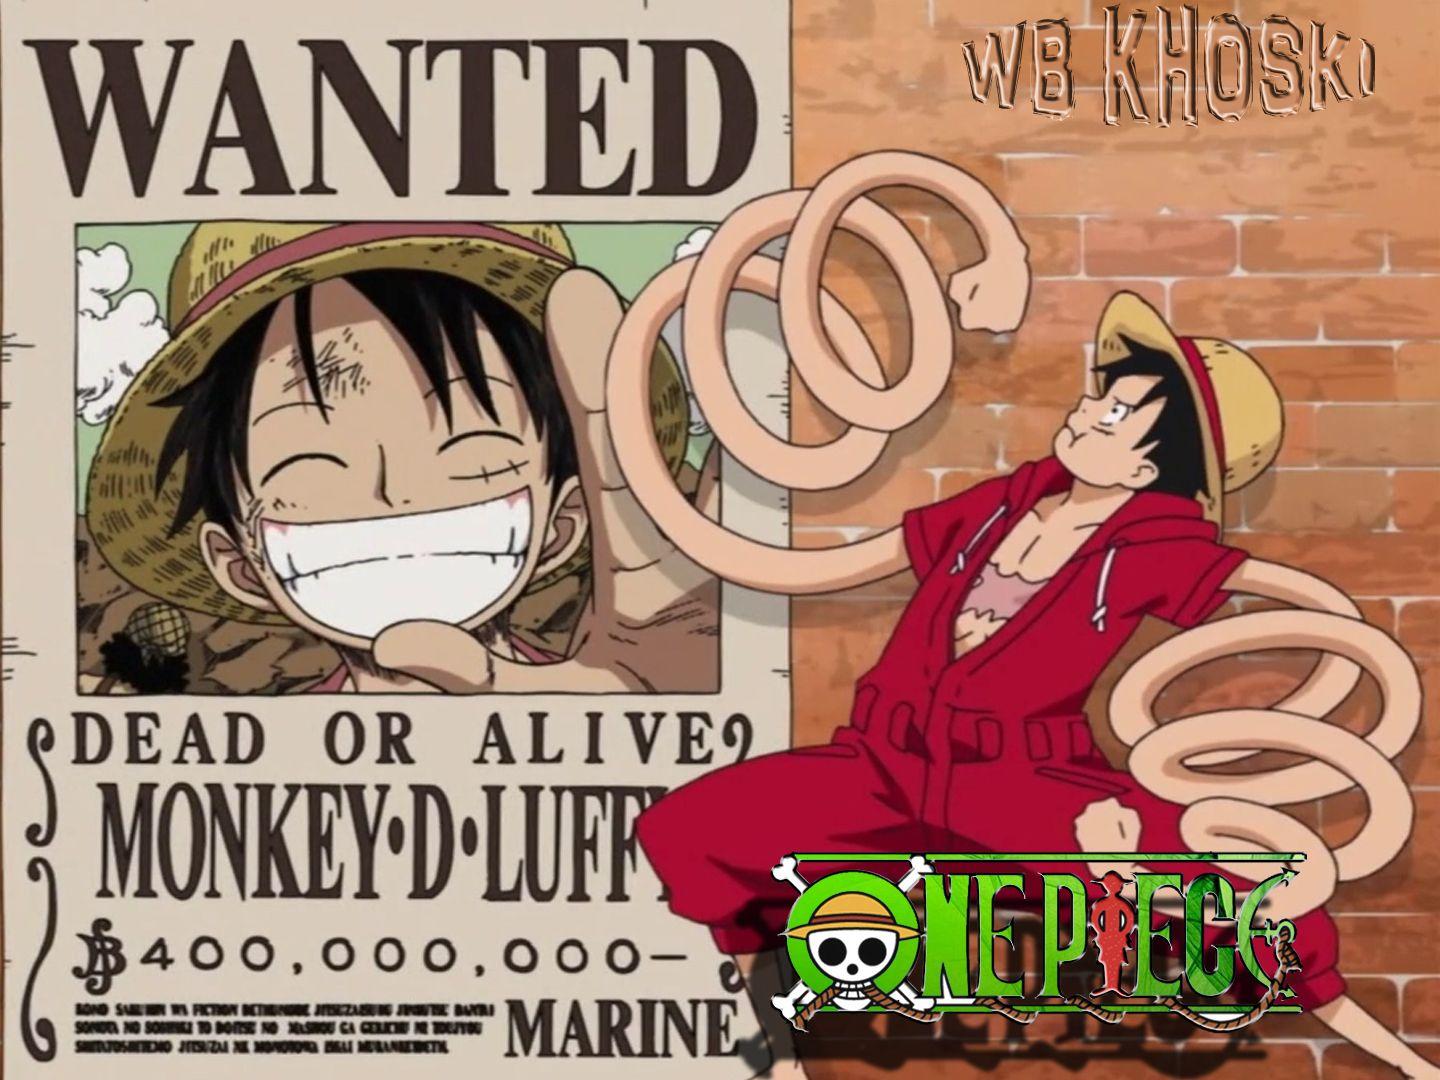 Captain Monkey D. Luffy by WB KHOSKI Wallpaper